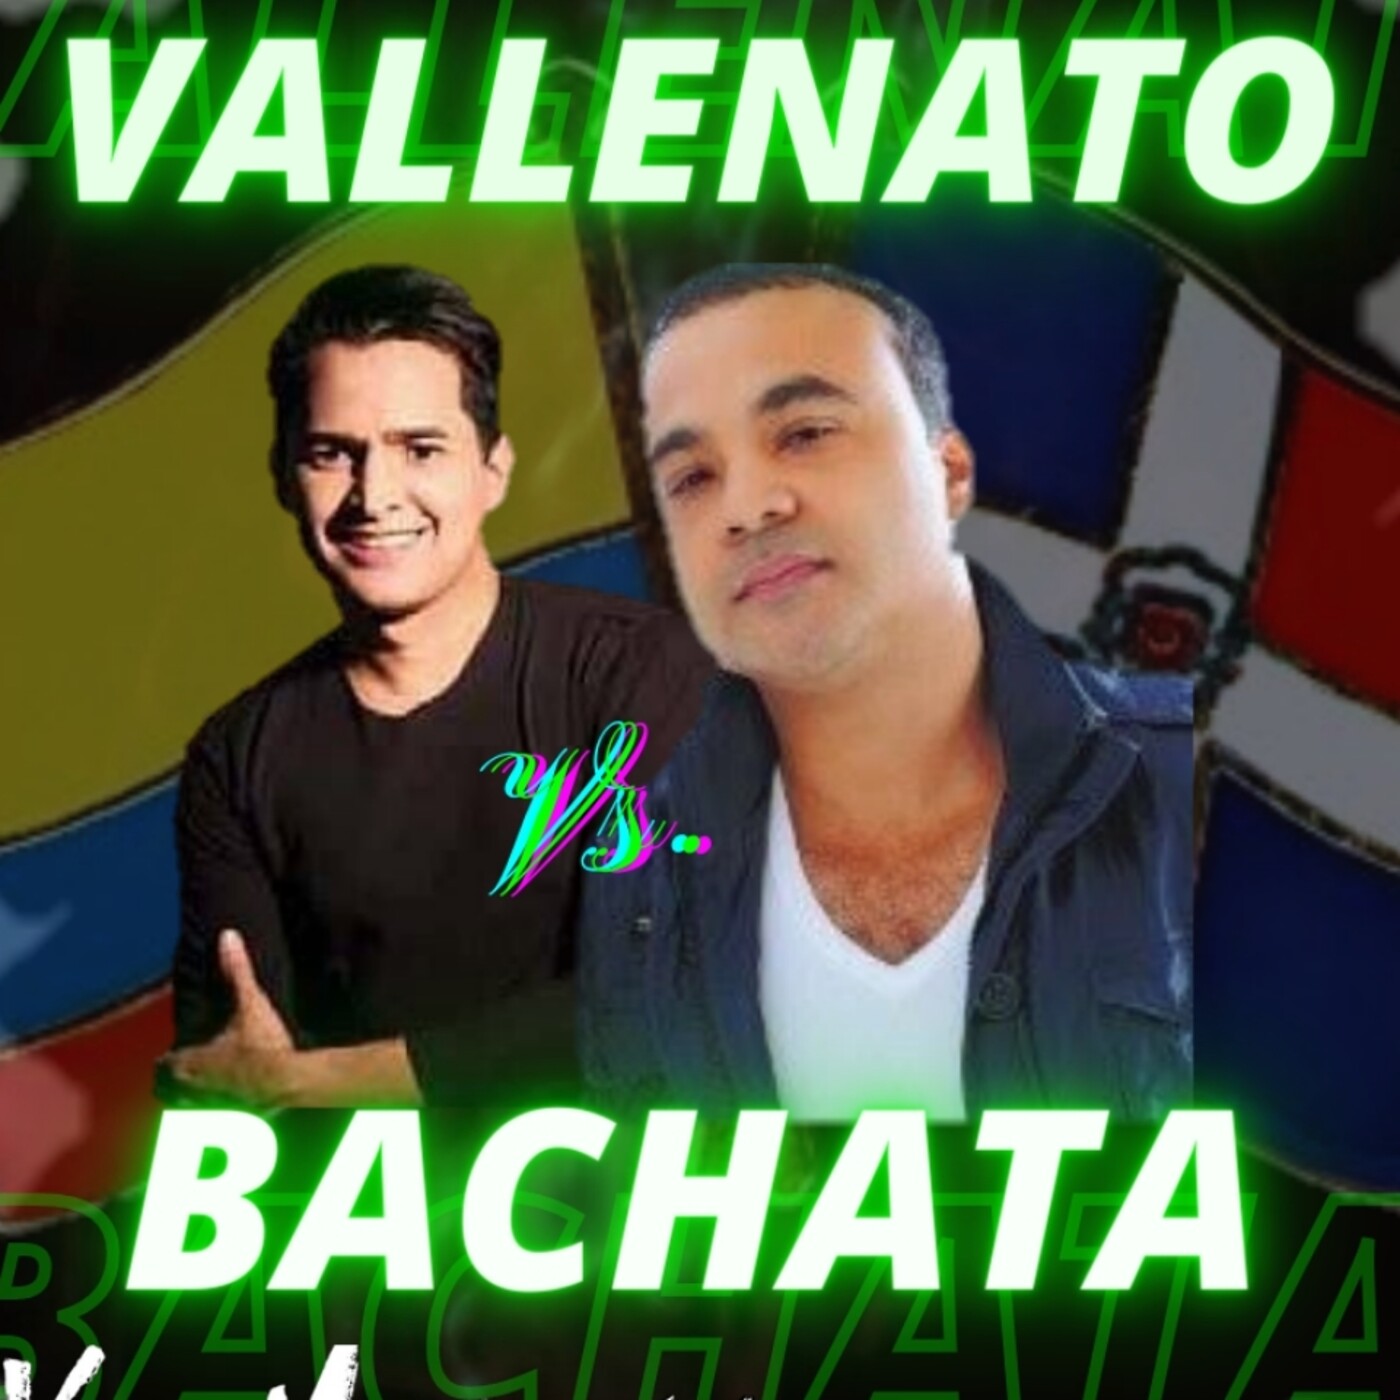 Vallenato VS Bachata Mix - Dj Xokomatic